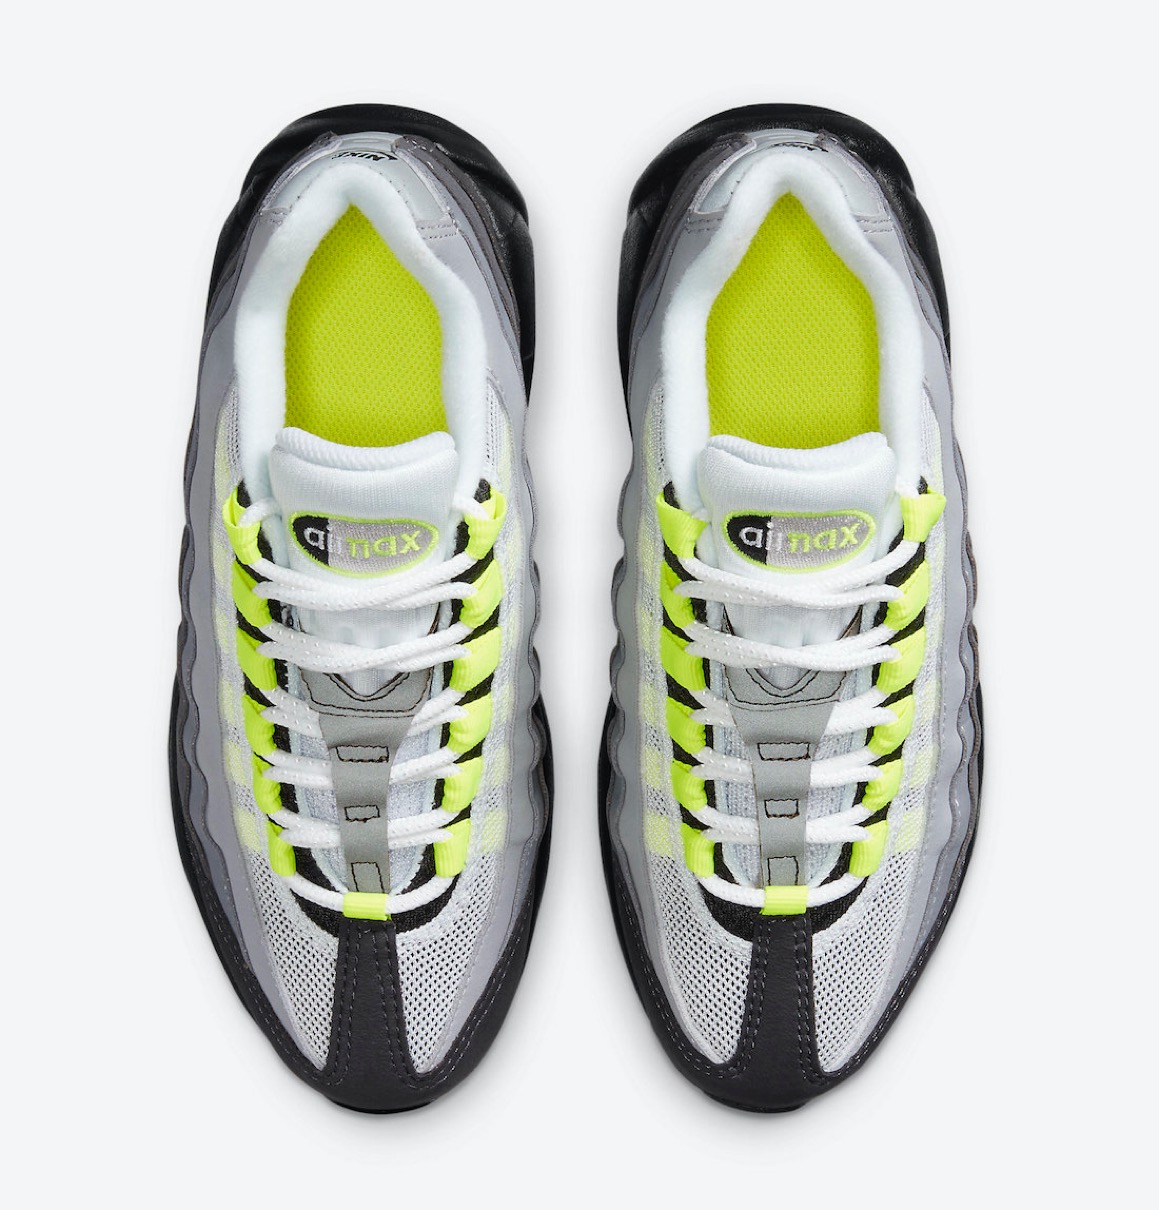 Nike】Air Max 95 OG “Neon” 通称イエローグラデが国内2020年12月17日 